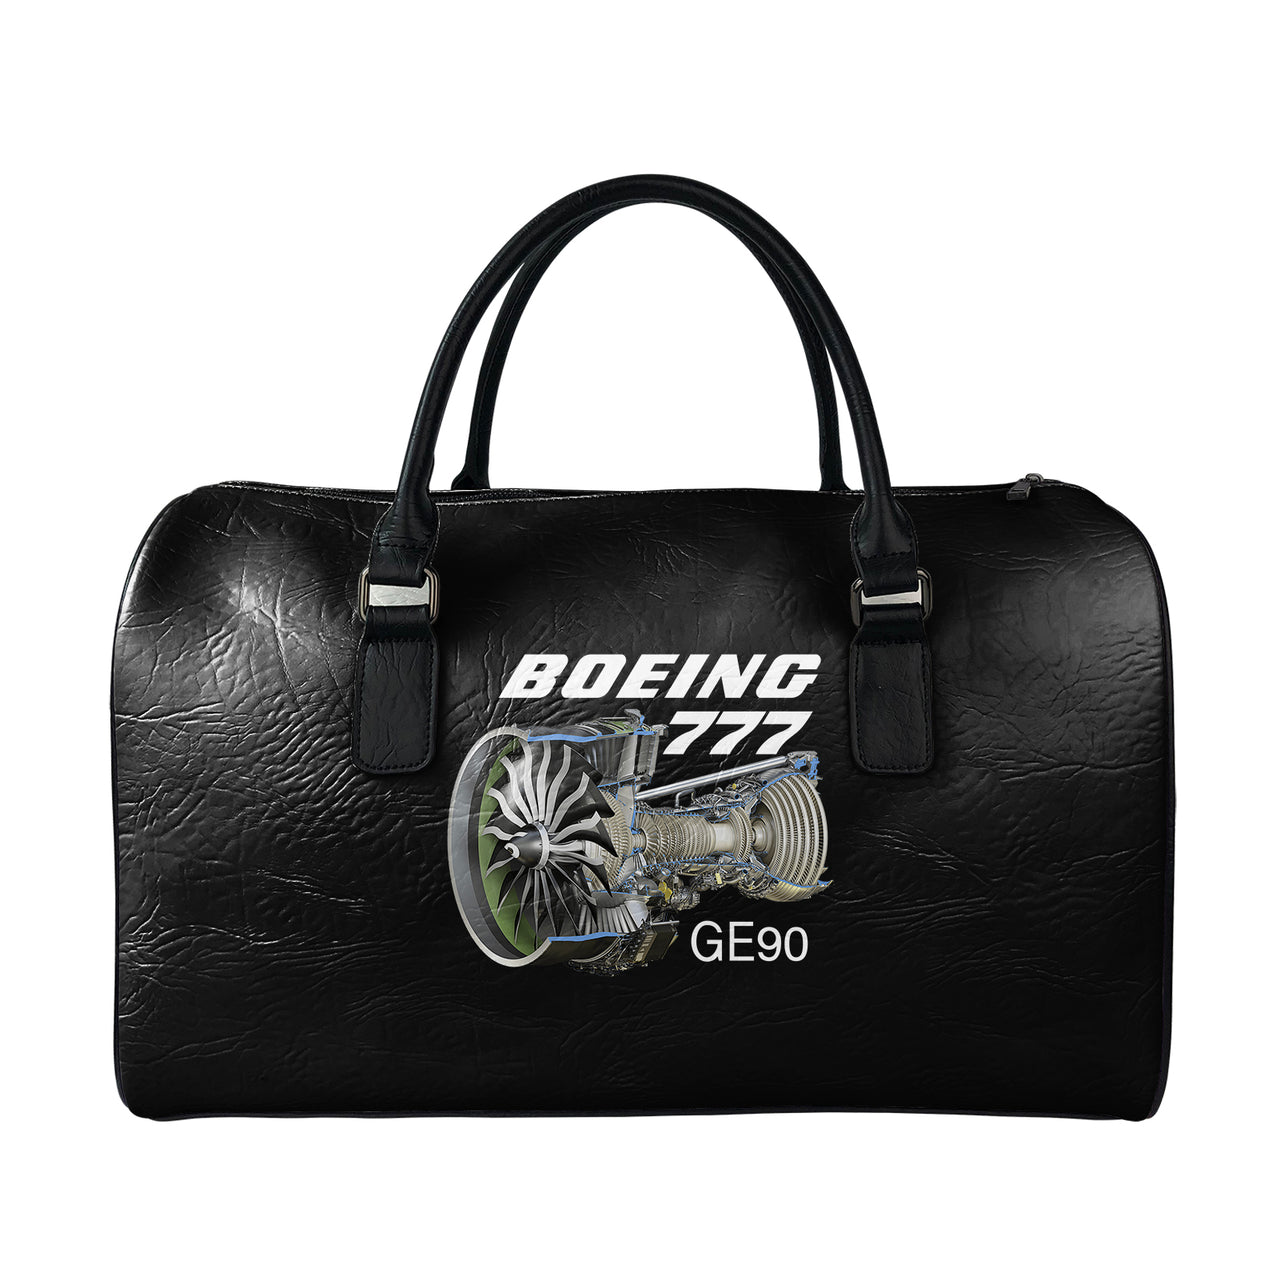 Boeing leather weekend bag